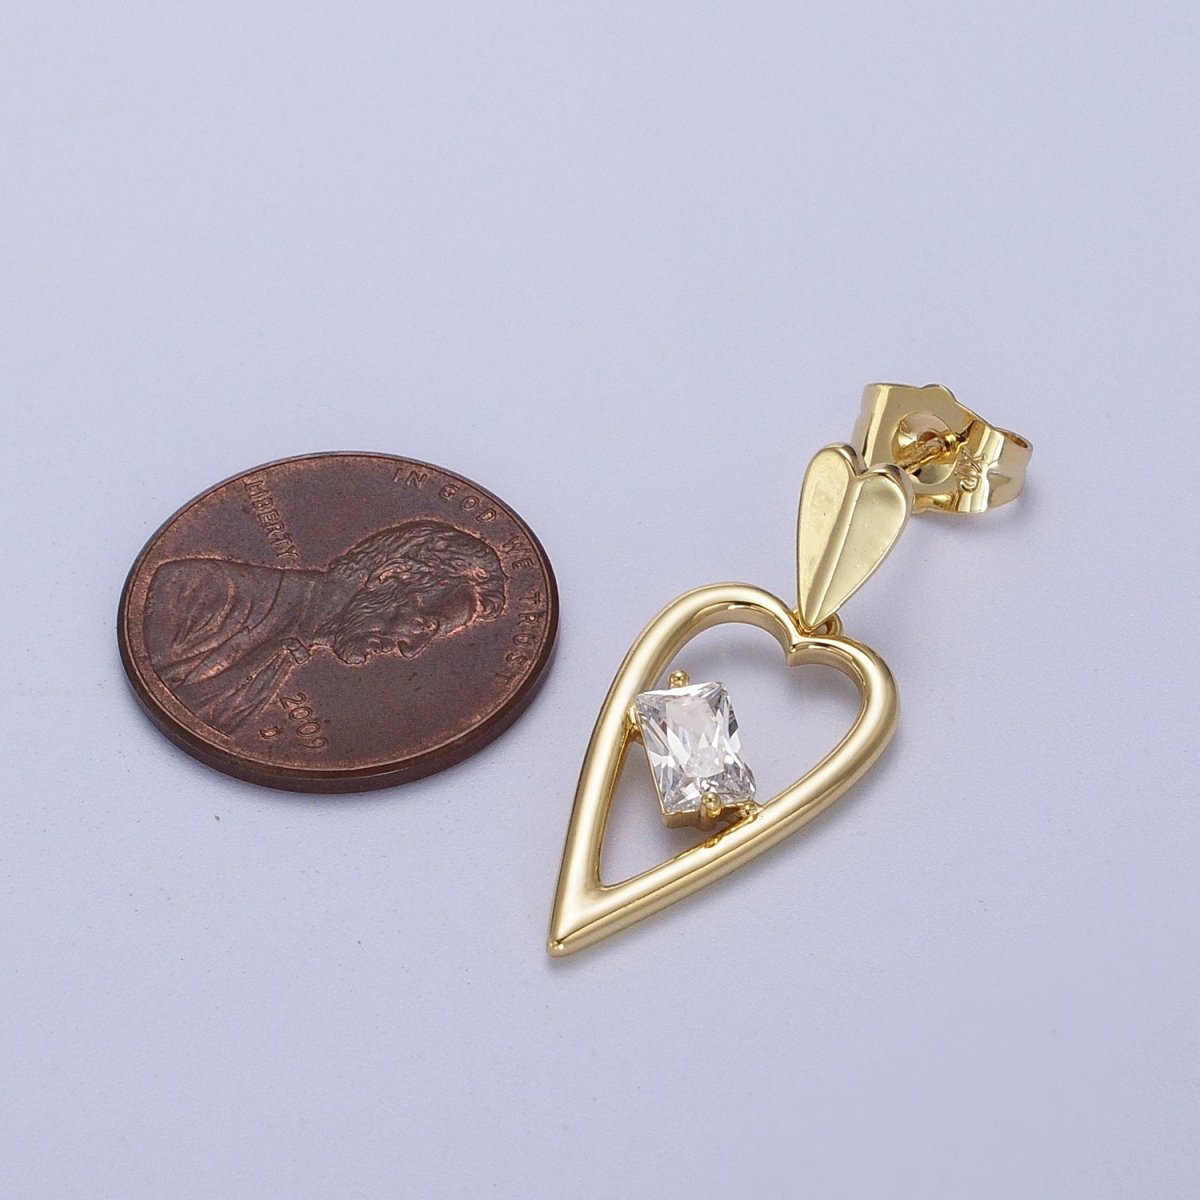 14K Gold Filled Clear Baguette CZ Heart Drop Dangle Stud Earrings | V-006 - DLUXCA